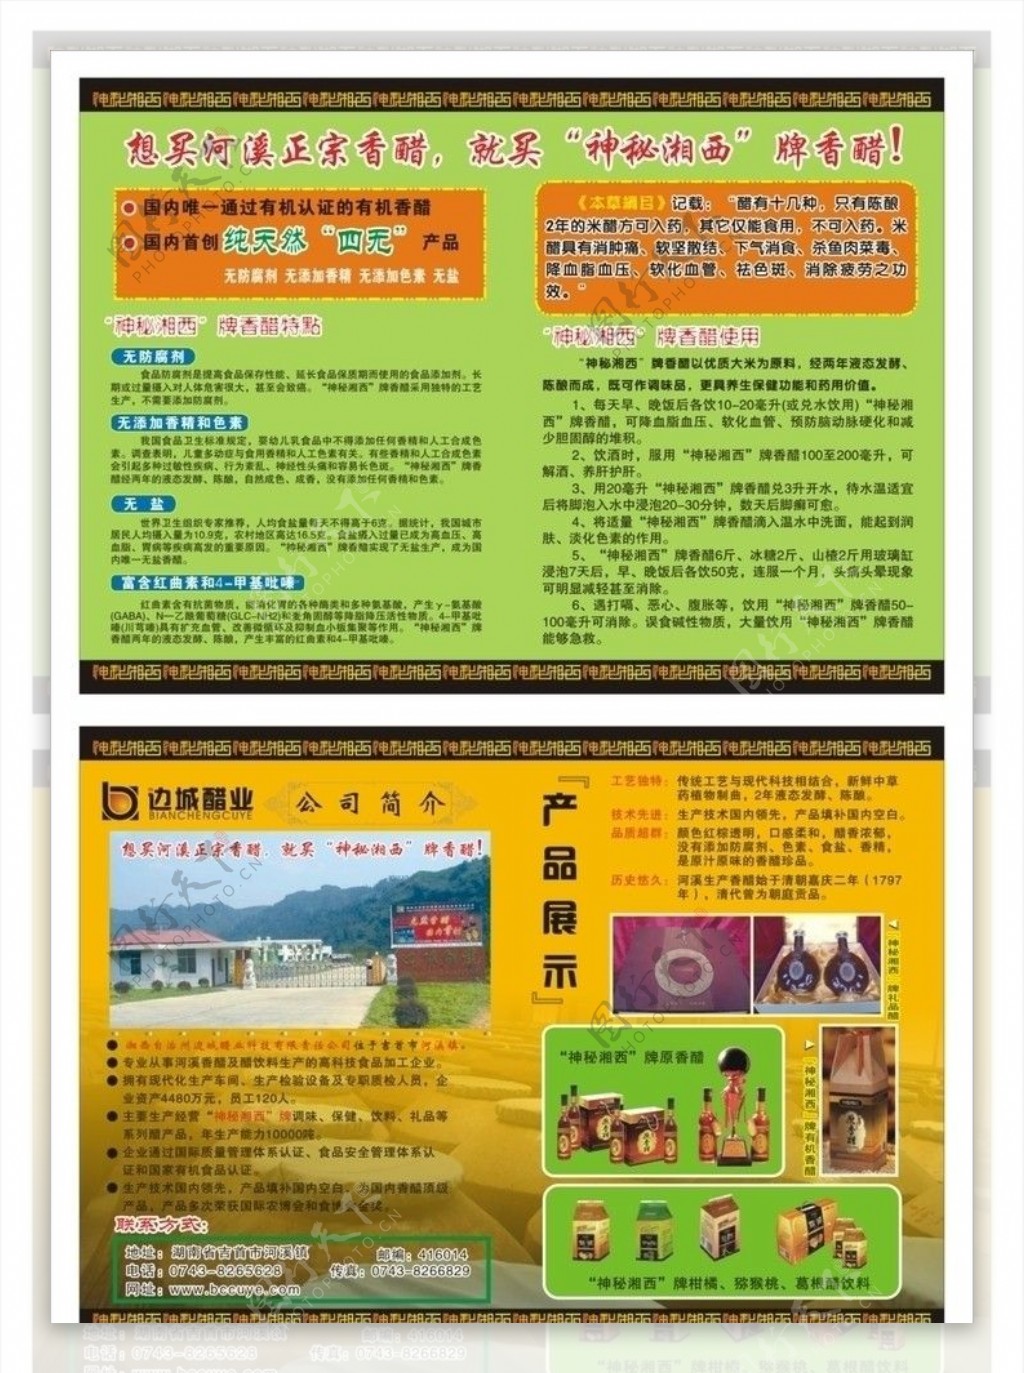 边城醋业神秘湘西产品展示黄色模板绿色模板宣传单盒子醋图片